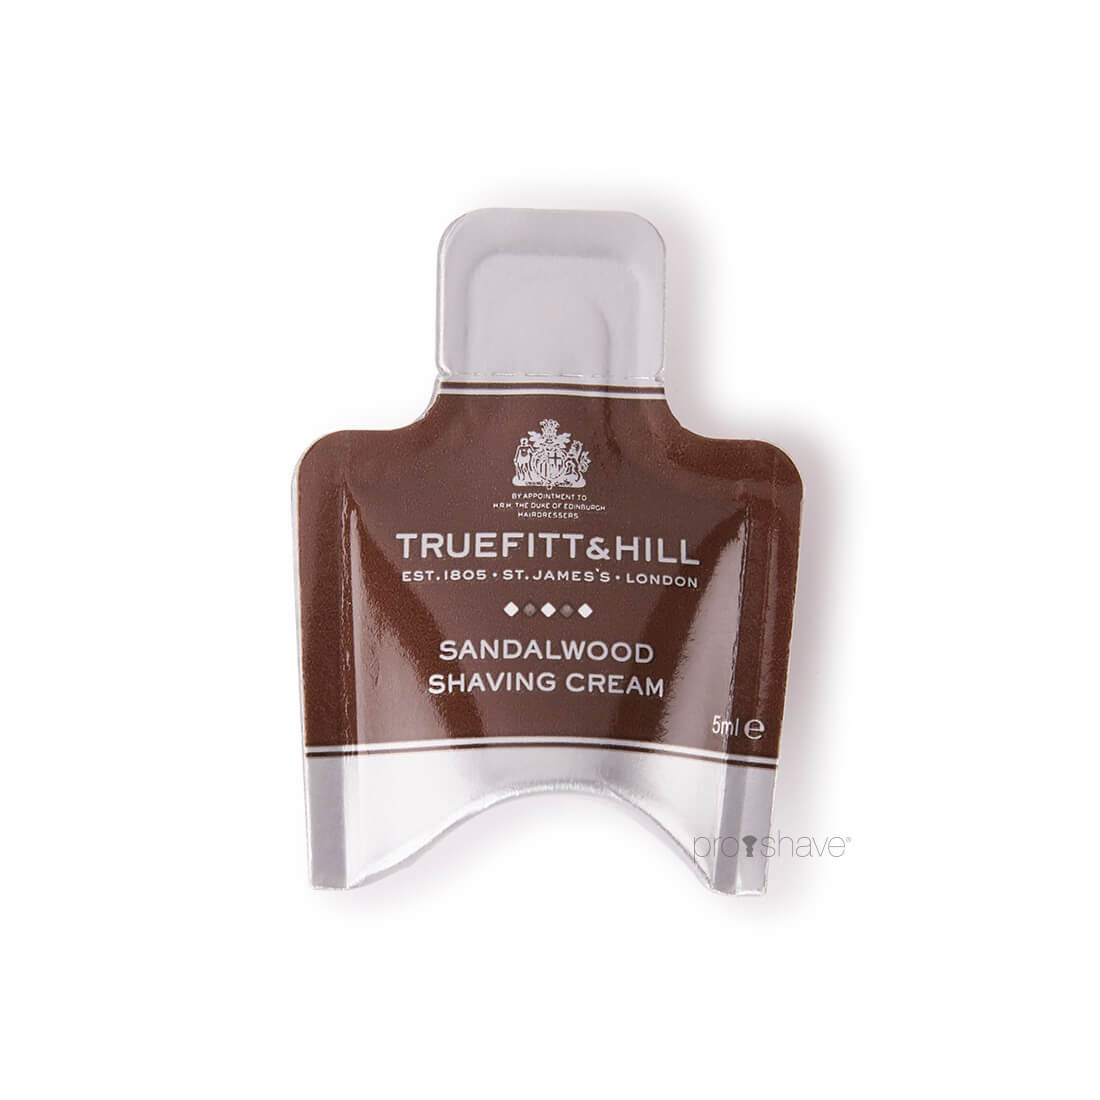 Truefitt & Hill Sandalwood Shaving Cream Sample Pack, 5 ml.